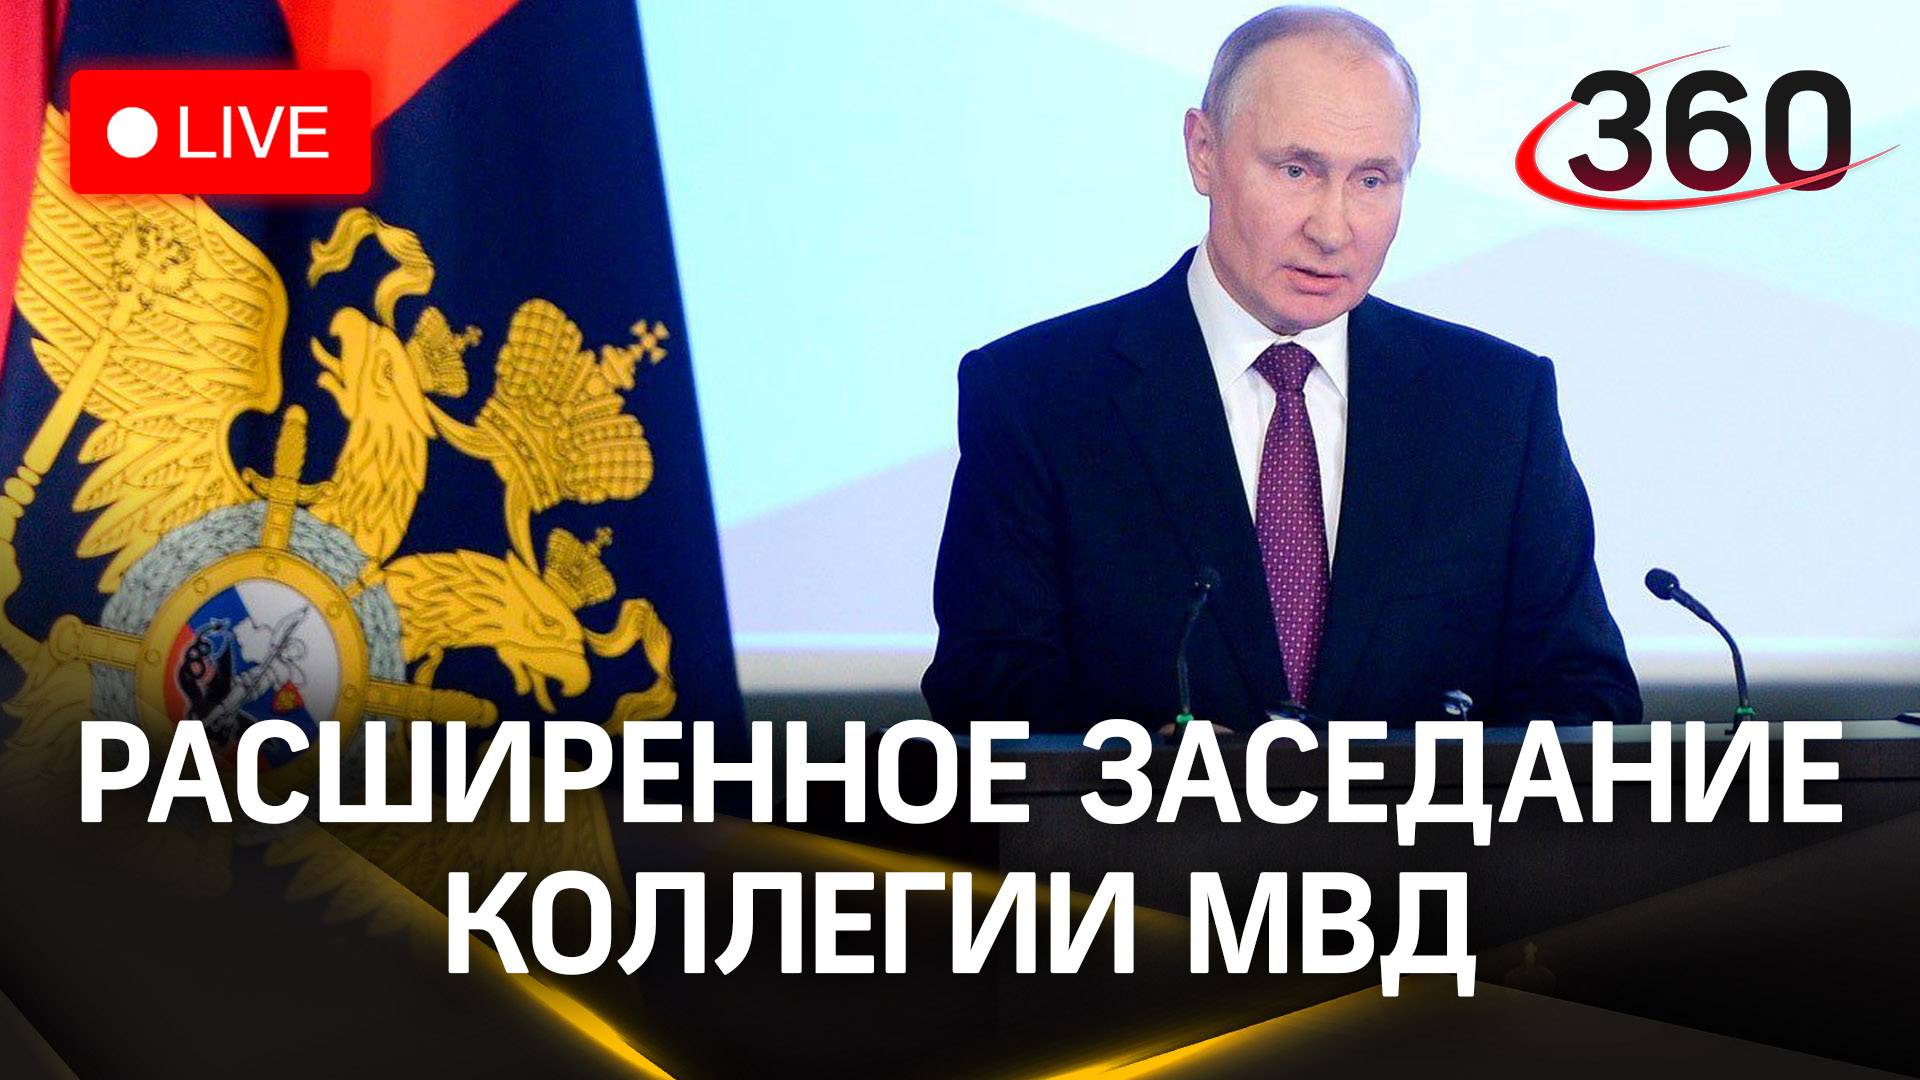 Путин выступает на коллегии МВД | Трансляция